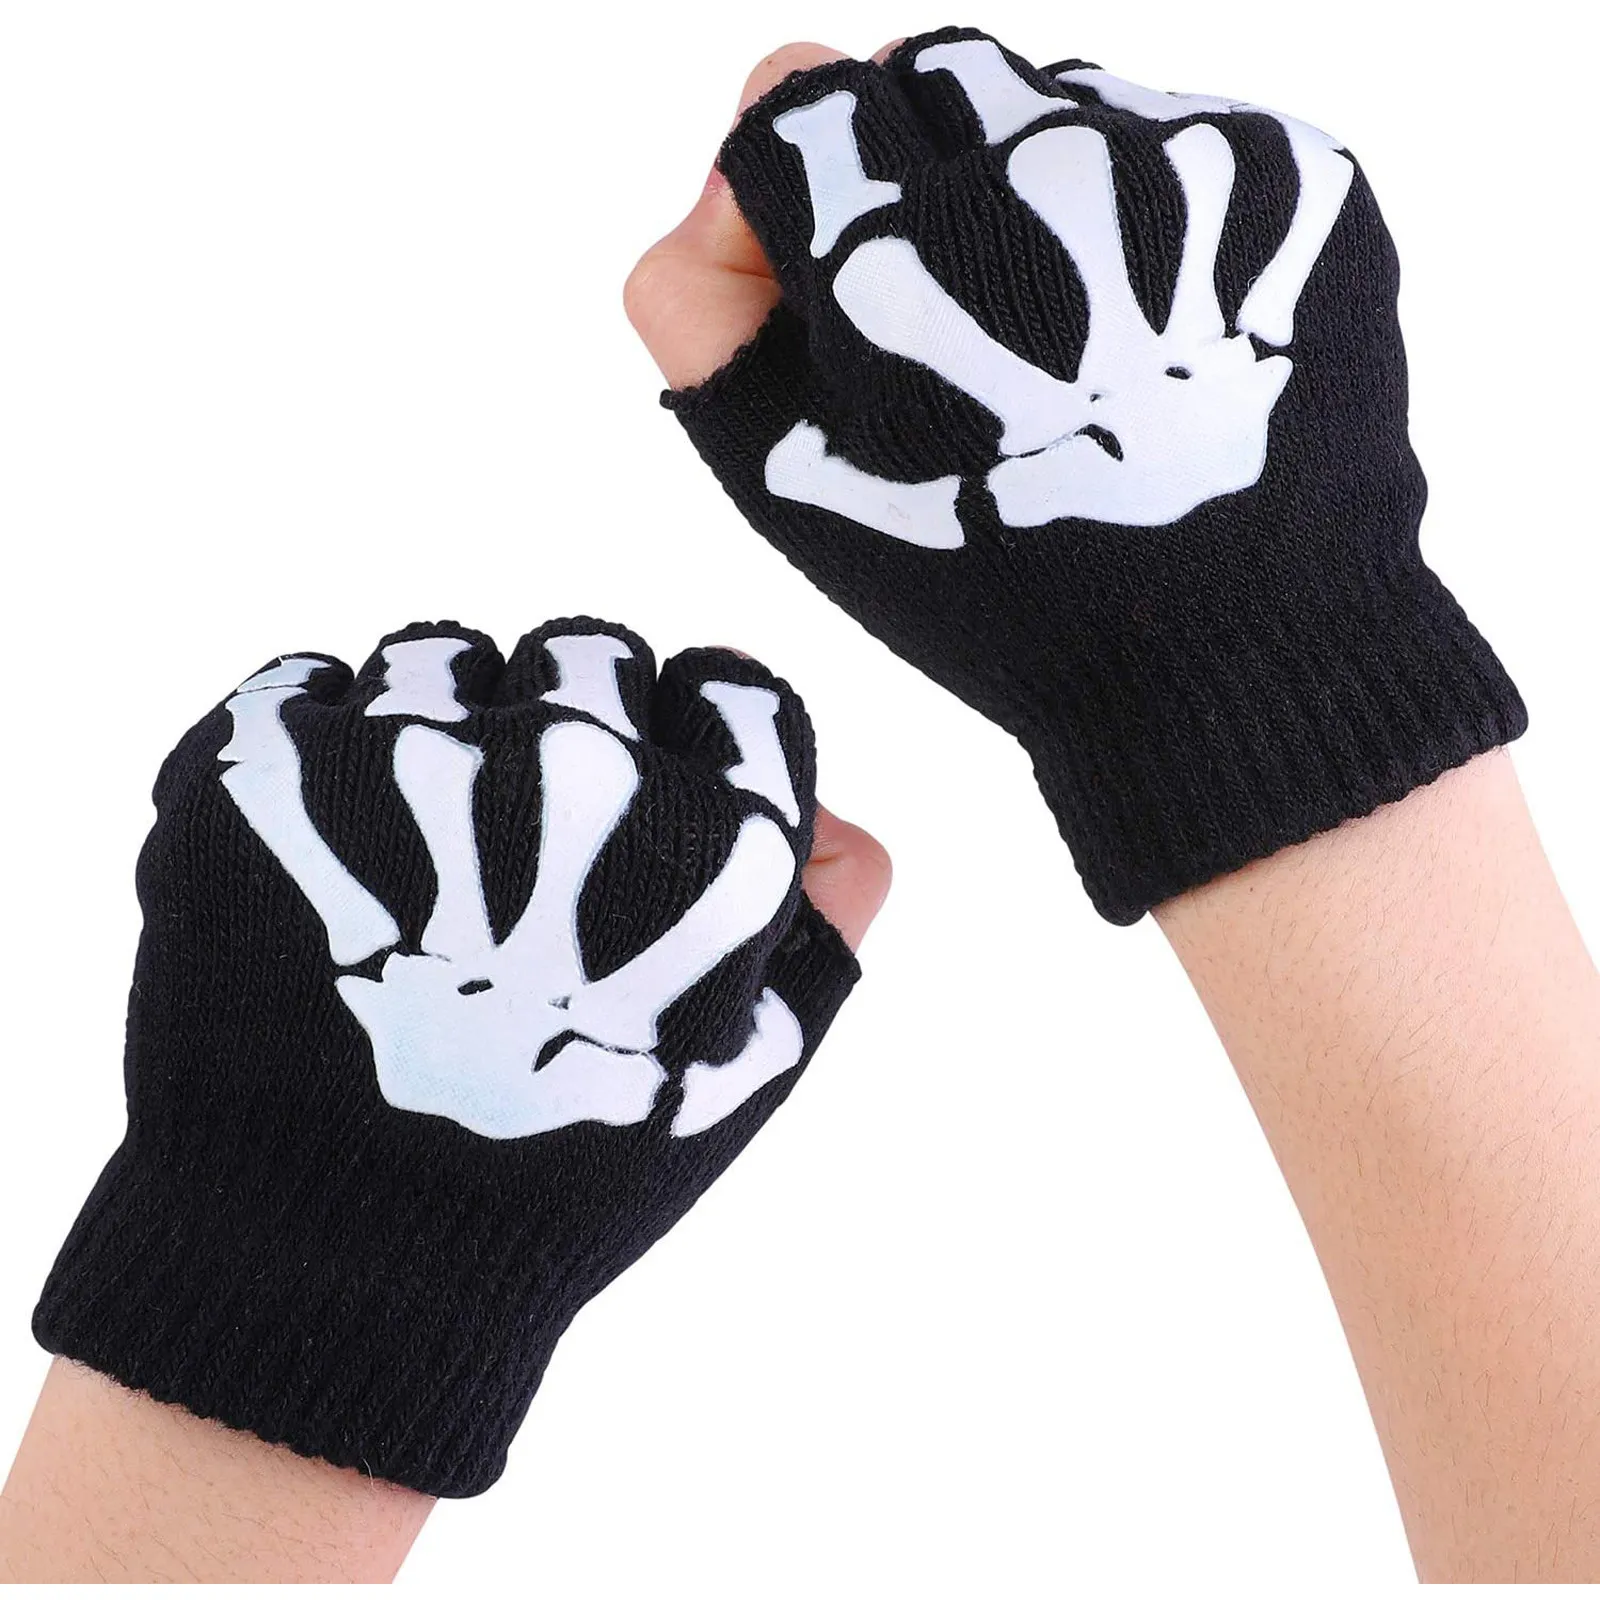 1/2/Halloween Glove Kids Skeleton Warm Glow In The Dark Fingerless Knitted Gloves Mitten Light For Children FY5602 913